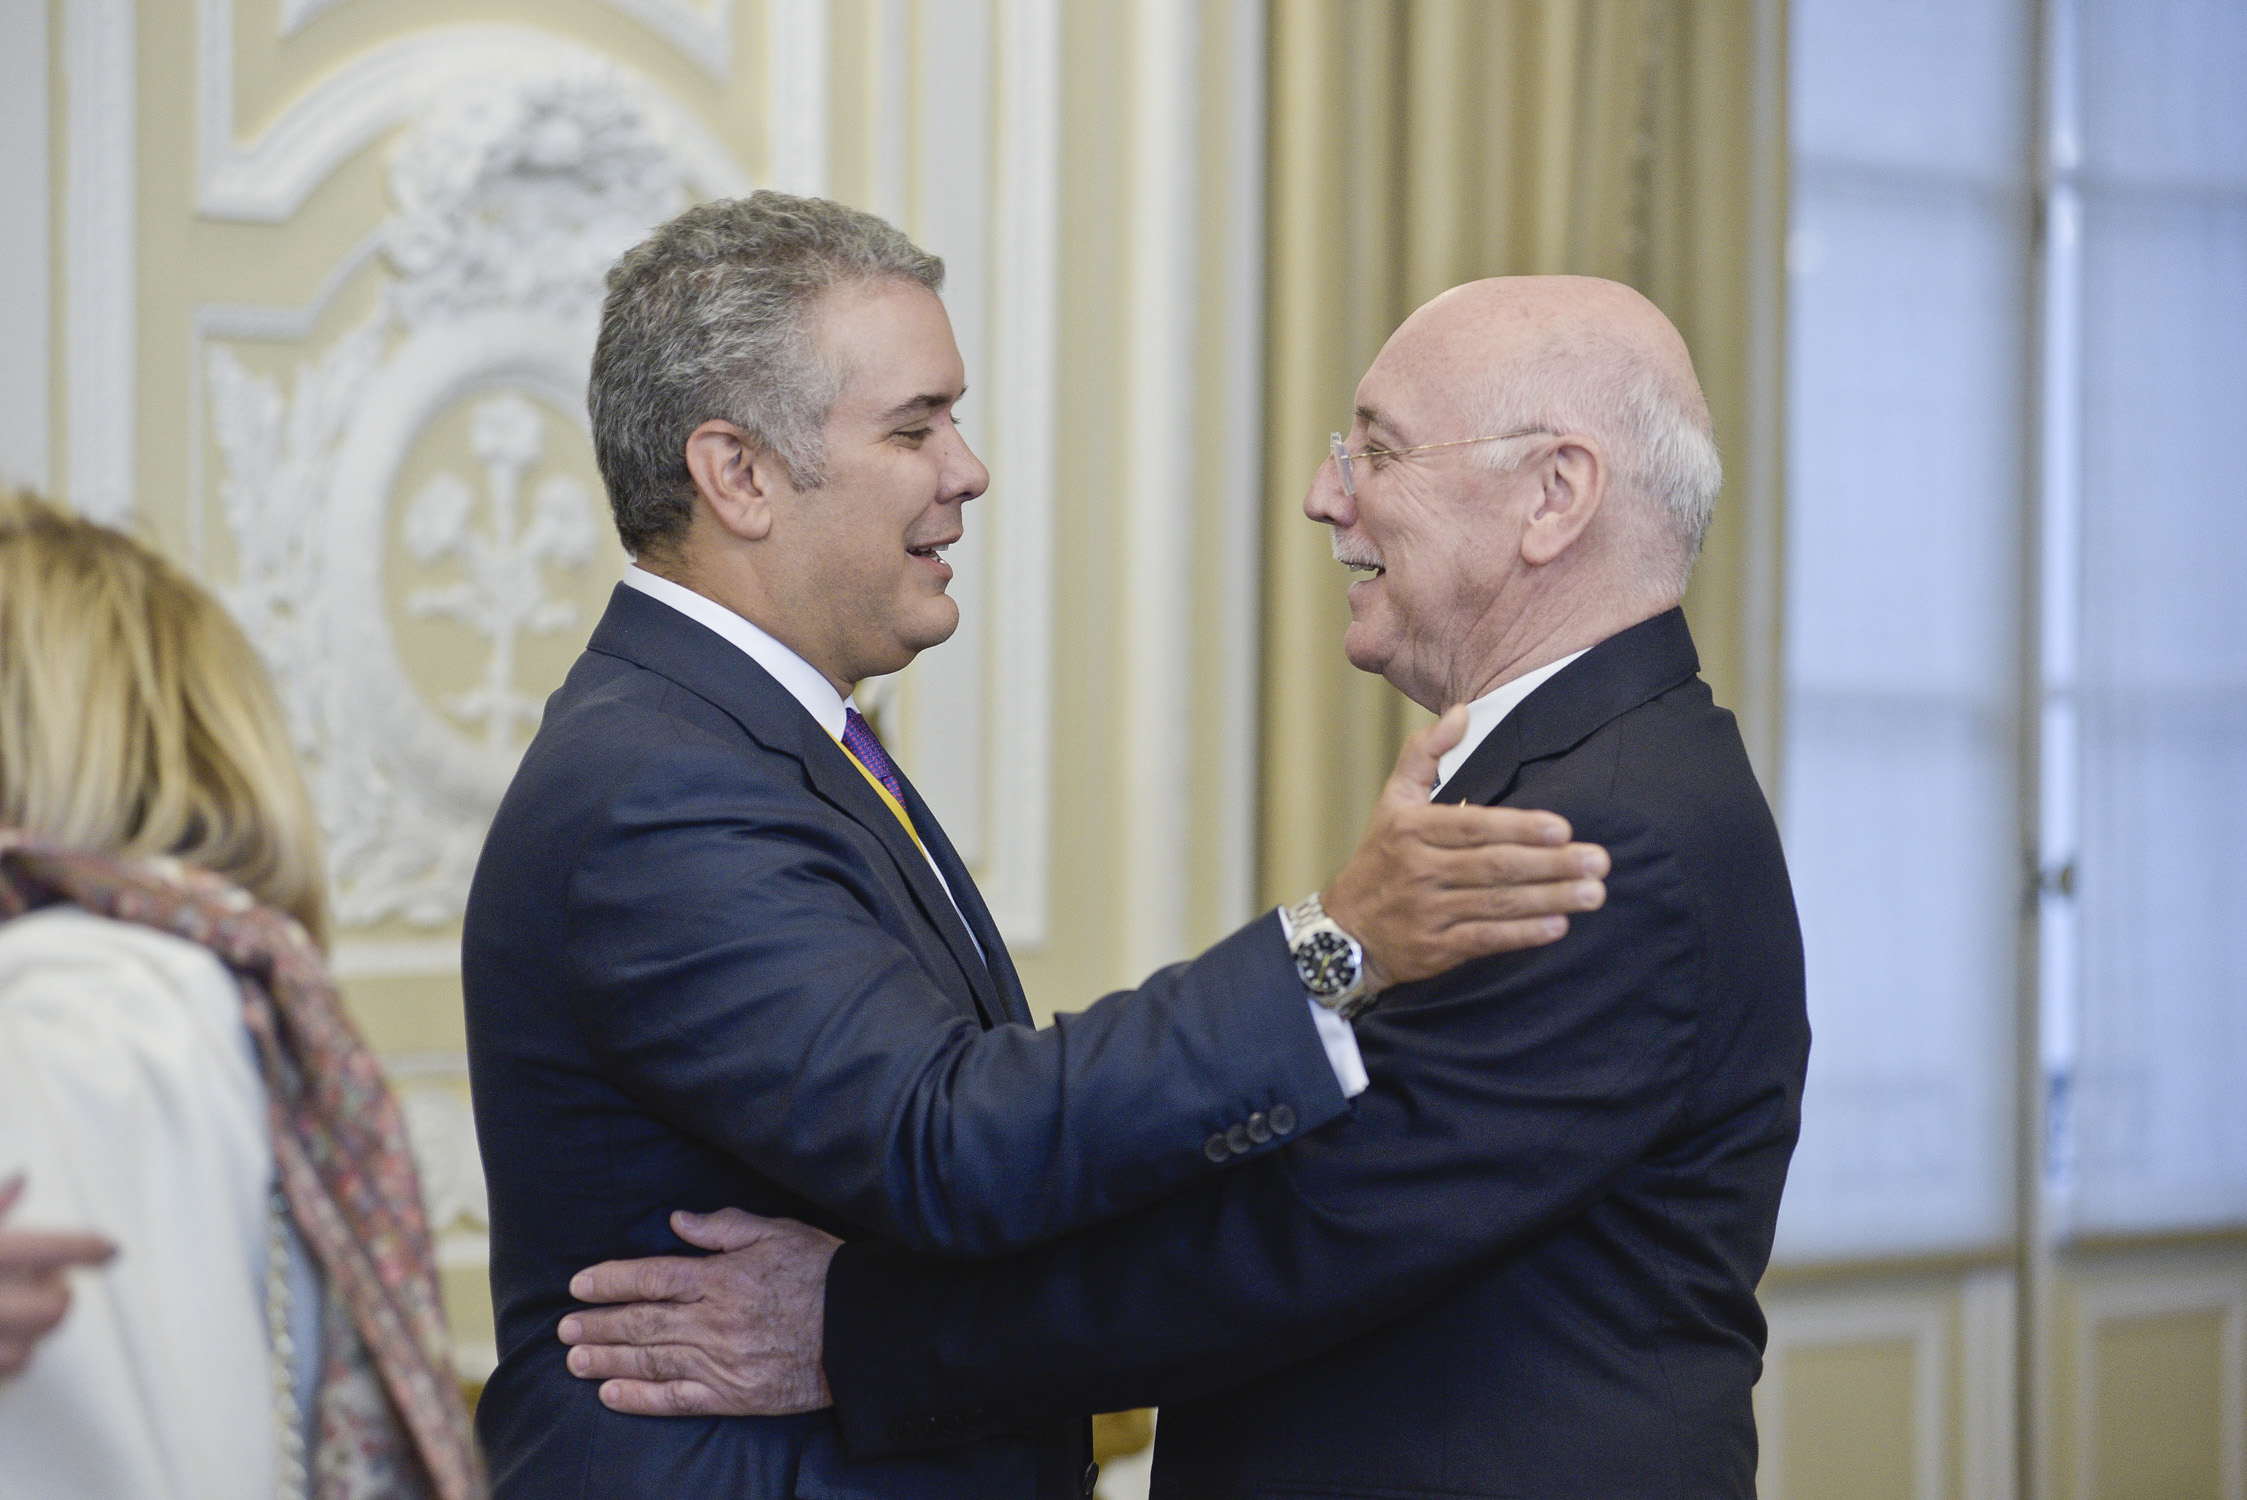 Vicepresidente Pucheta en representación del Paraguay presentó sus saludos al nuevo Presidente de Colombia Iván Duque Márquez